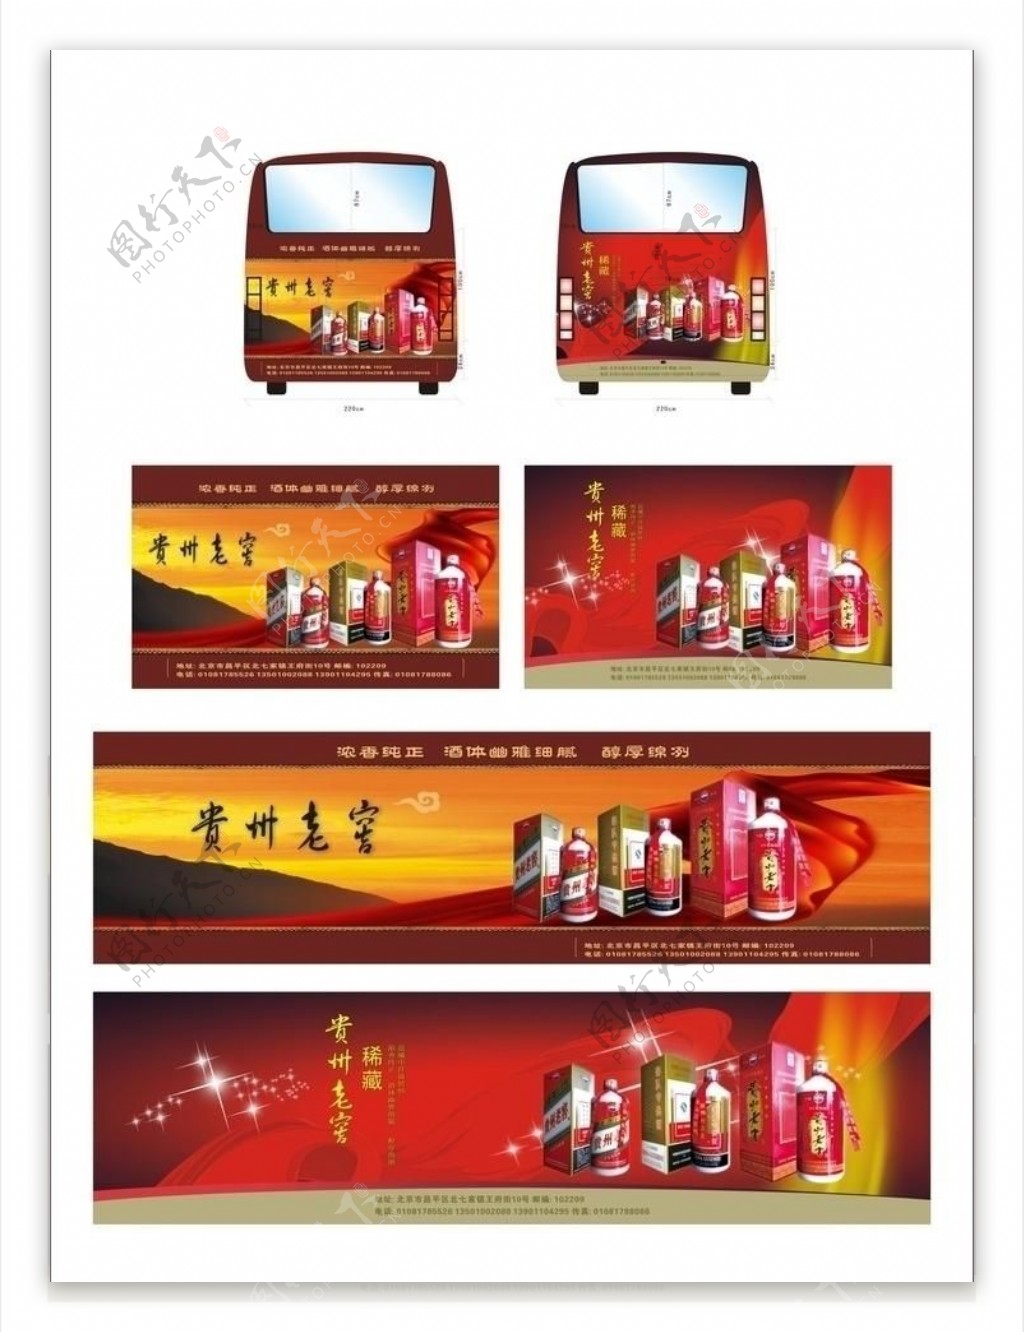 贵州老窖车贴广告展板设计